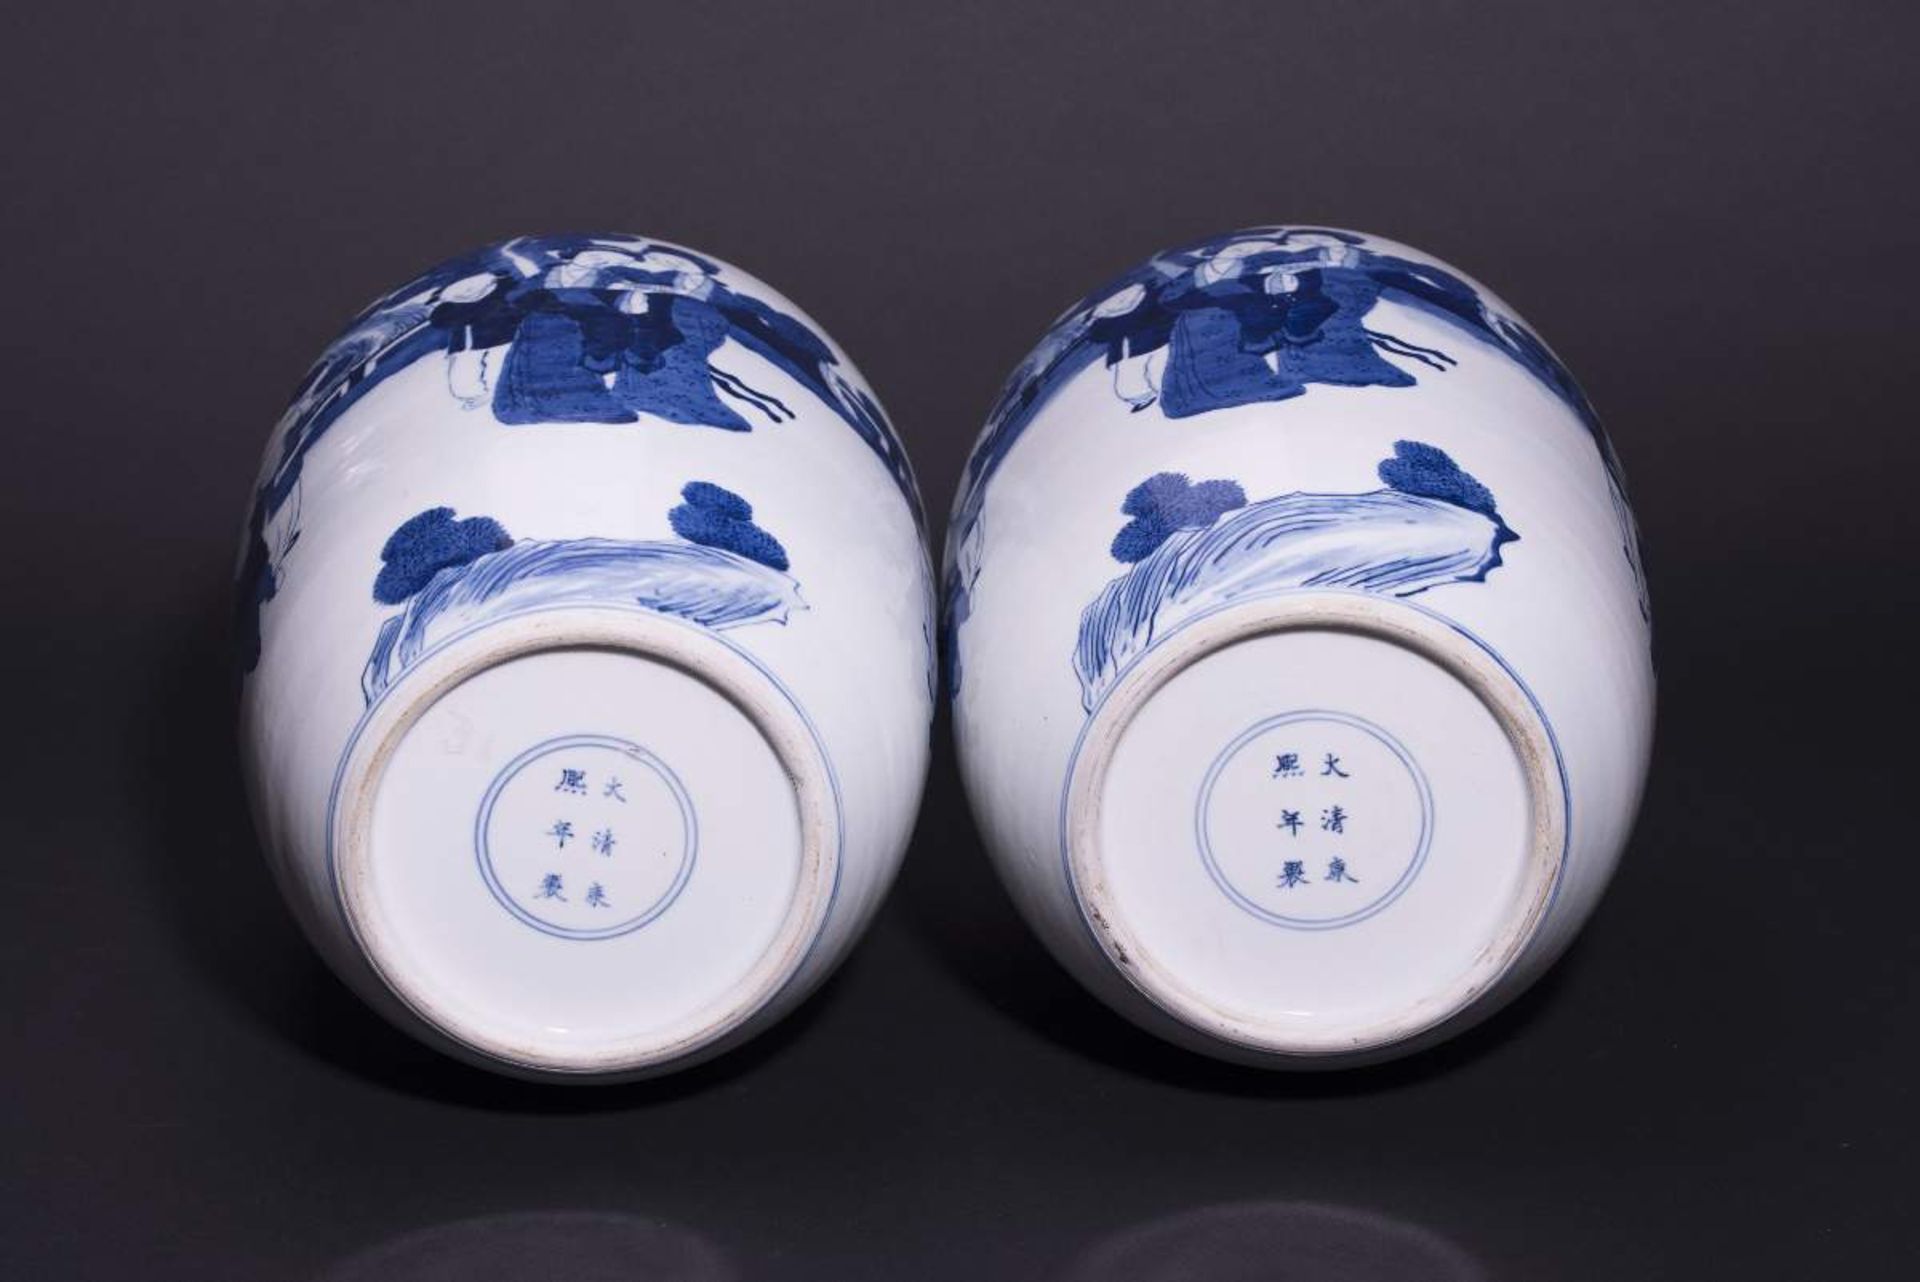 PAAR DECKELVASEN MIT GARTENSZENENBlauweißes Porzellan. China, Qing-Dynastie, 19. Jh.Mit Bodenmarke - Bild 5 aus 6